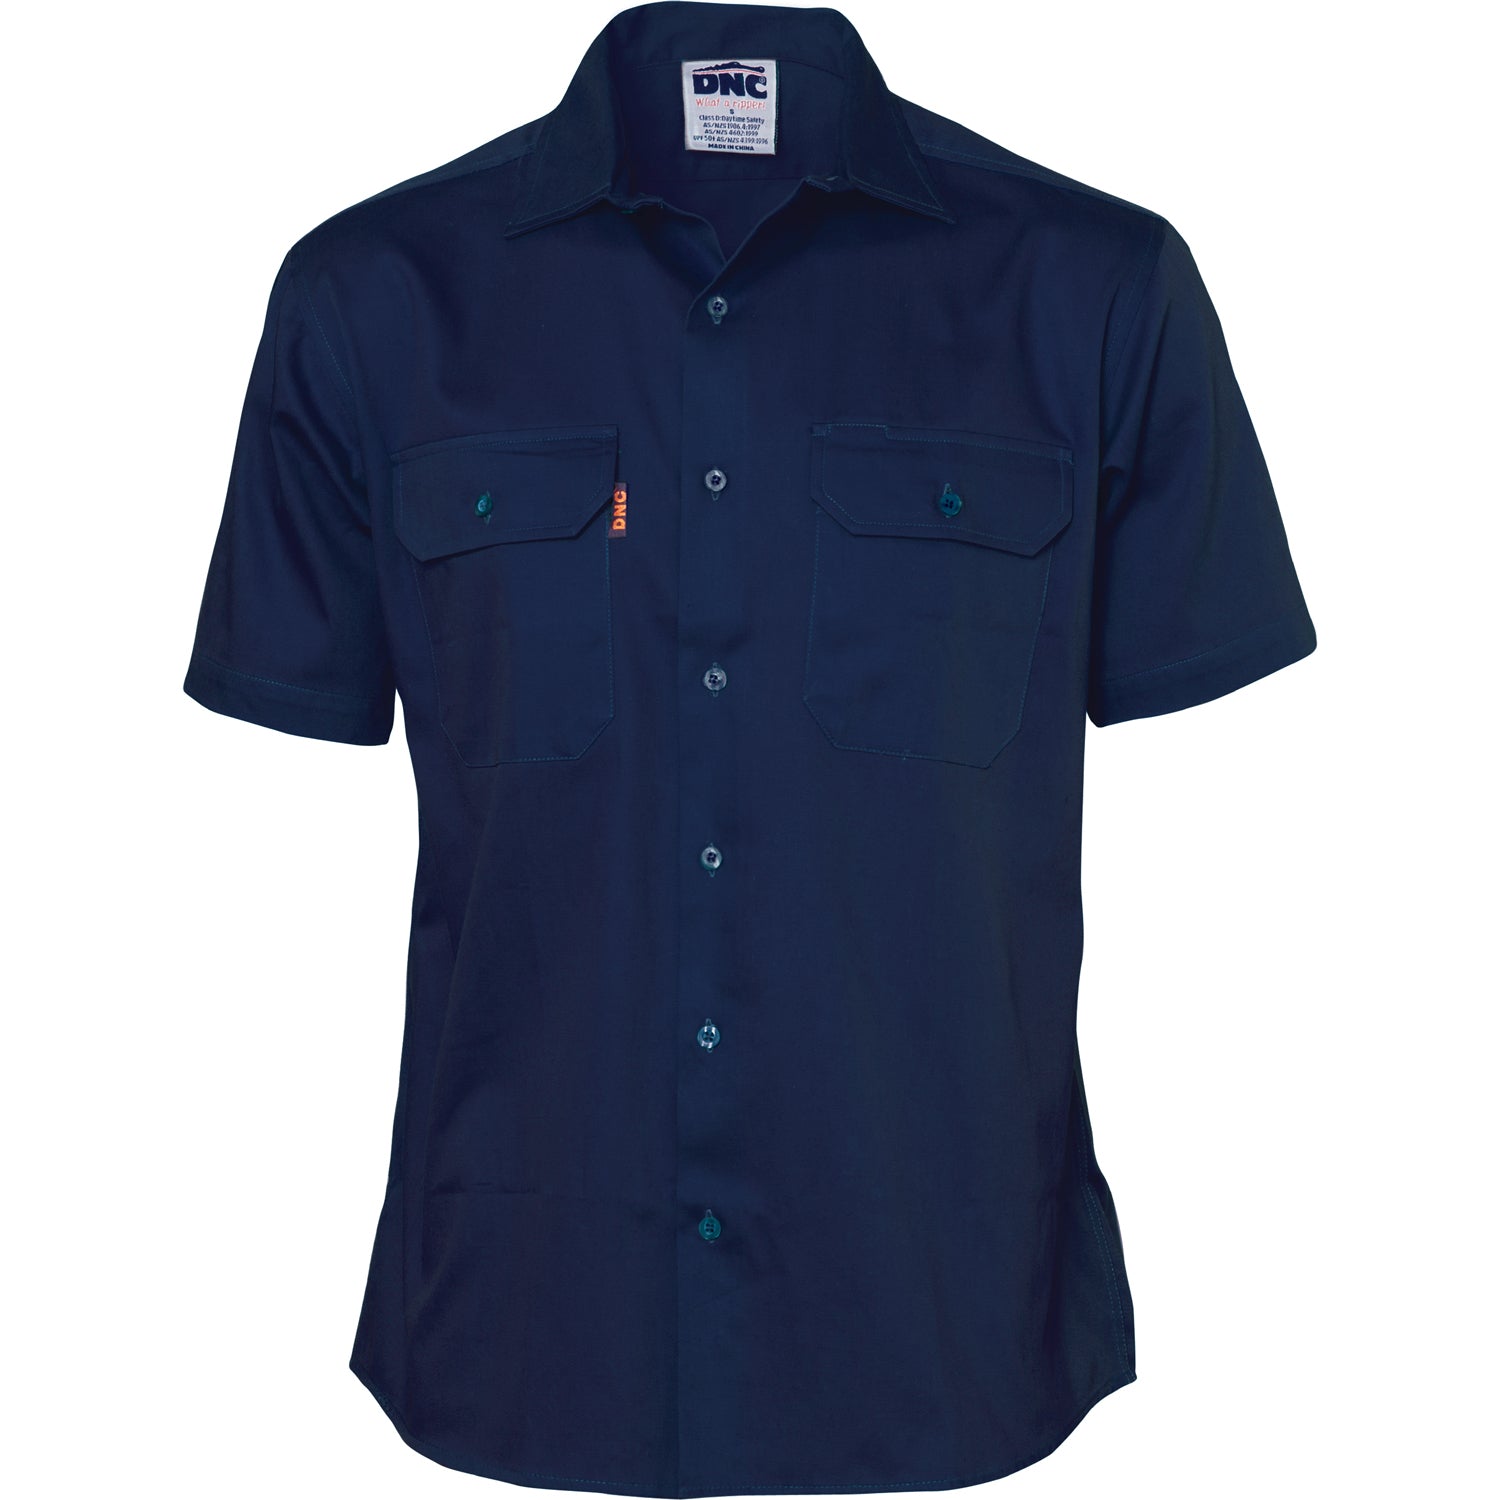 Dnc 3201 Cotton Drill Work Shirt - Short Sleeve